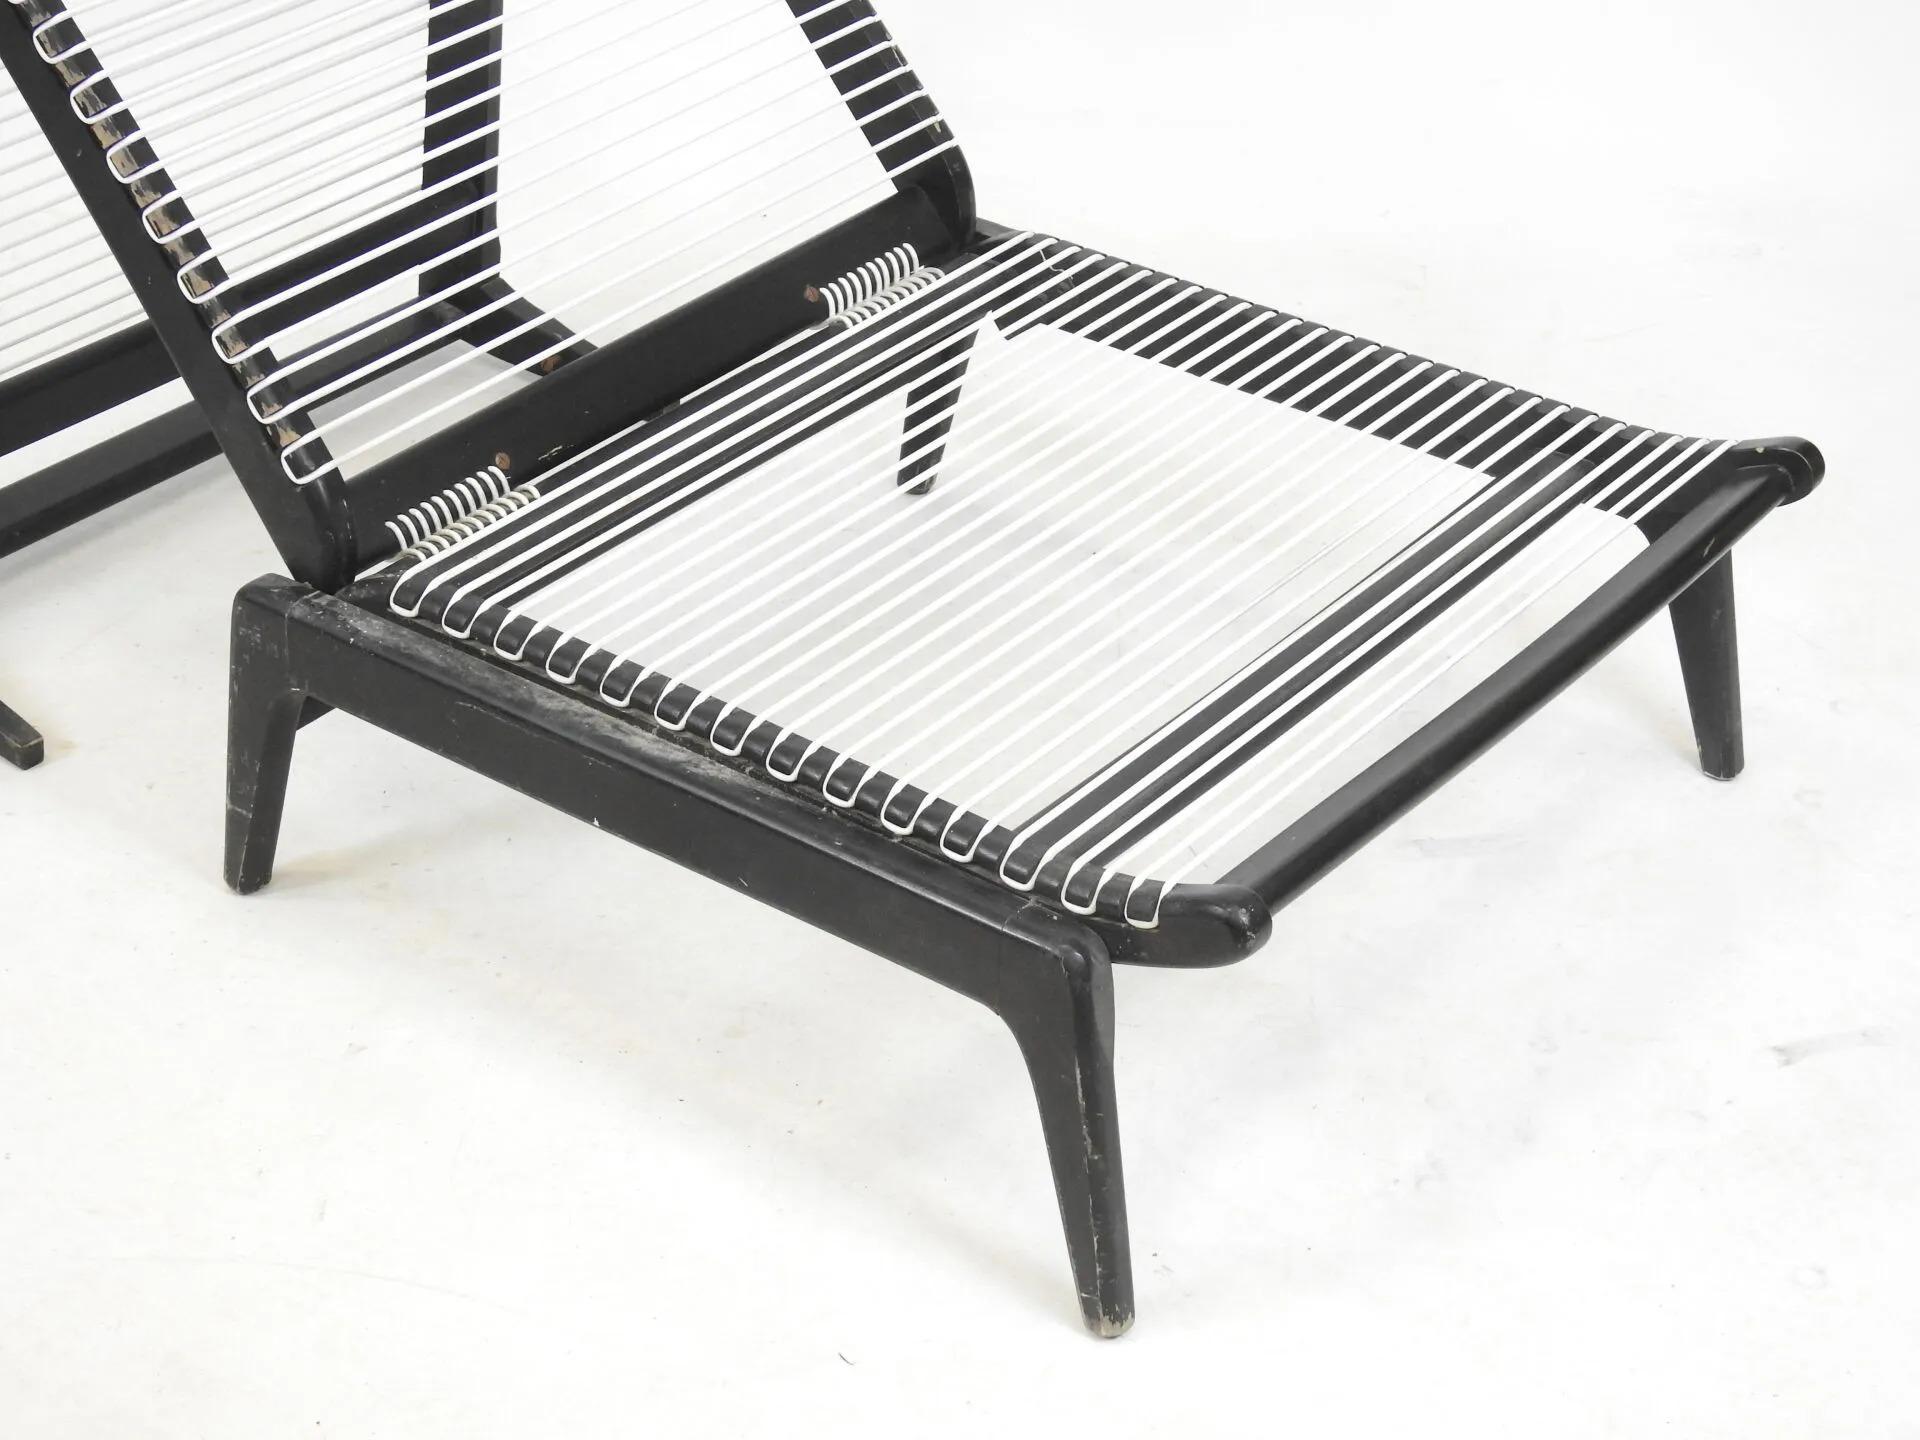 G. TIGIEN Cabrio-Sessel aus lackiertem Holz, Edition La Maison Europeenne, 1964.
Metallkordel mit weißem Kunststoff.
3 Positionen:  Sessel, Kaminsessel, Liege
Tagesbett : 10,24 